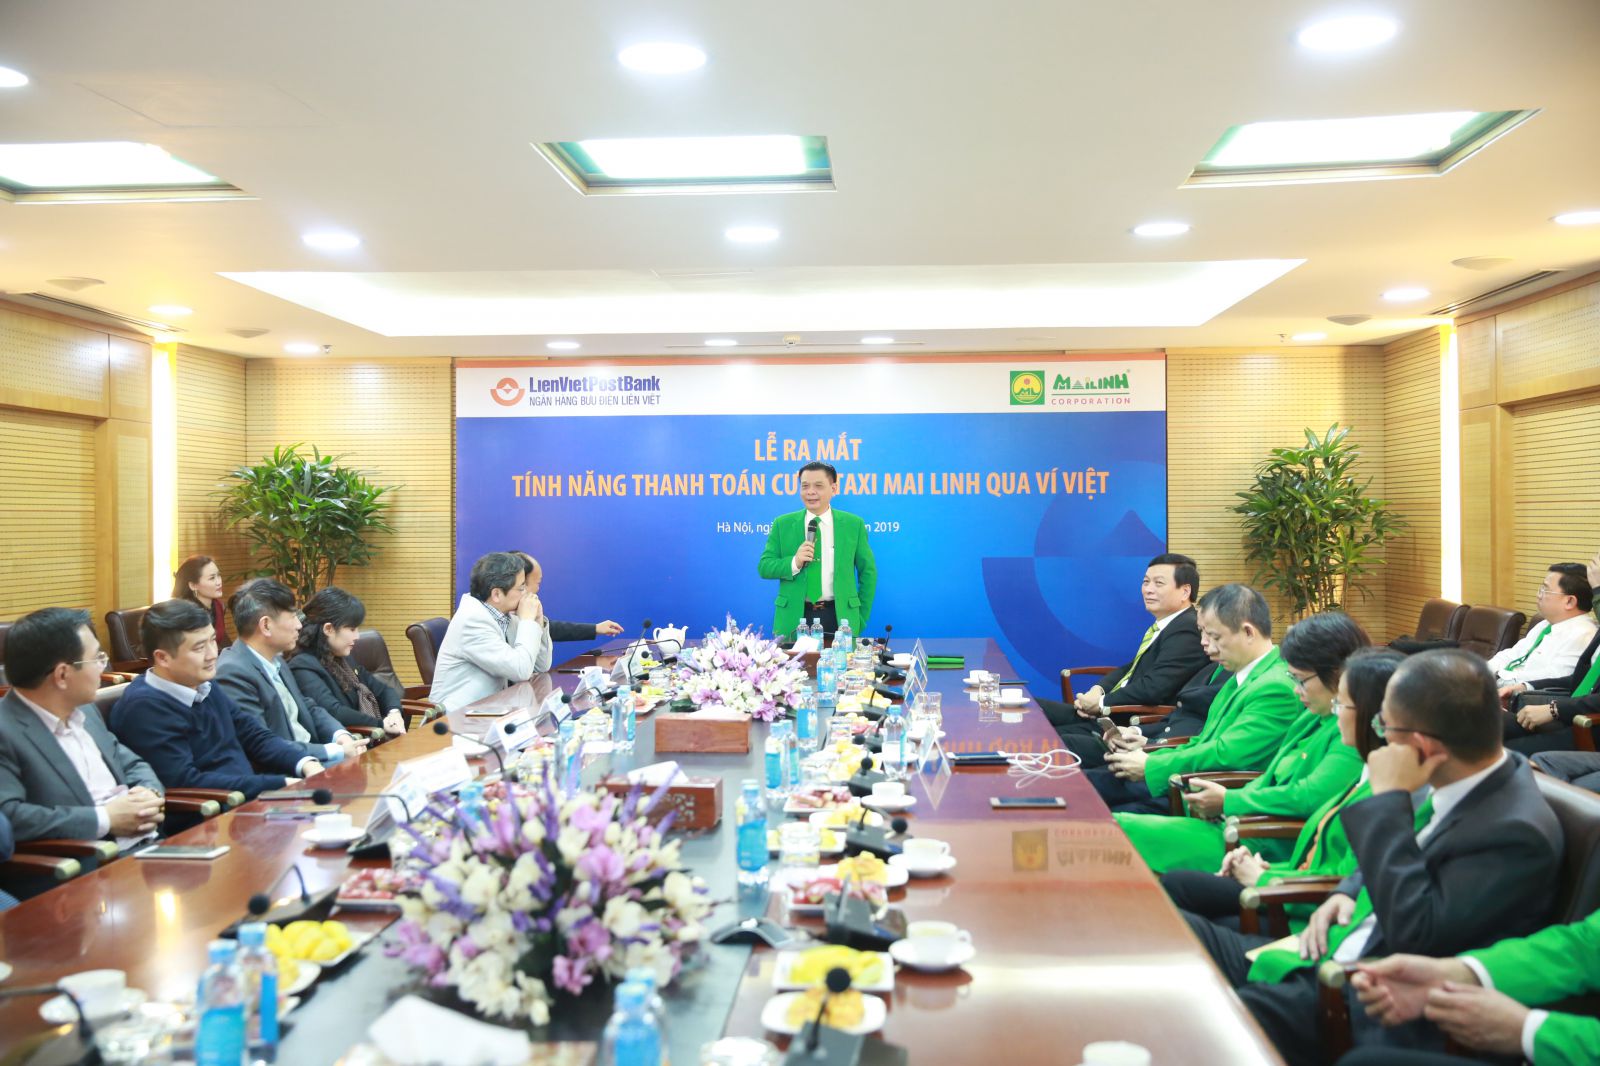 Ông Hồ Huy - Chủ tịch MaiLinh Group: “Ứng dụng công nghệ cao và đa dạng hóa các phương tiện thanh toán cho khách hàng là ưu tiên hàng đầu